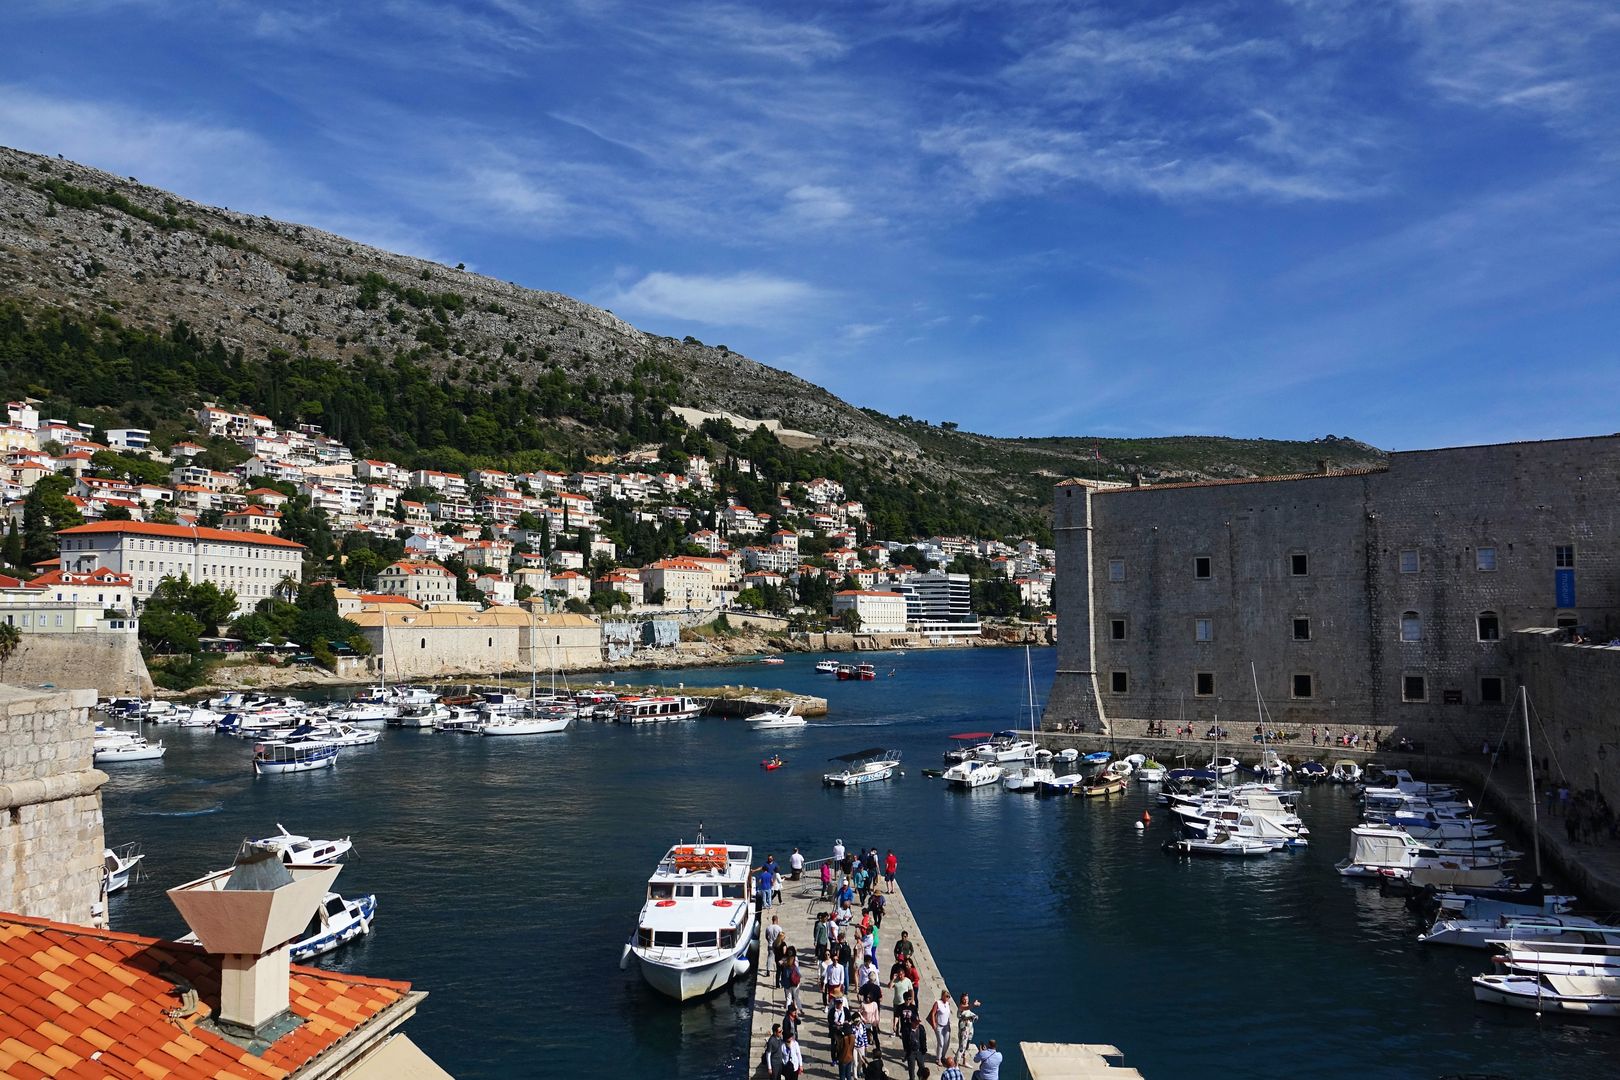 2018_09_Dubrovnik_vycházka po hradbách (34)